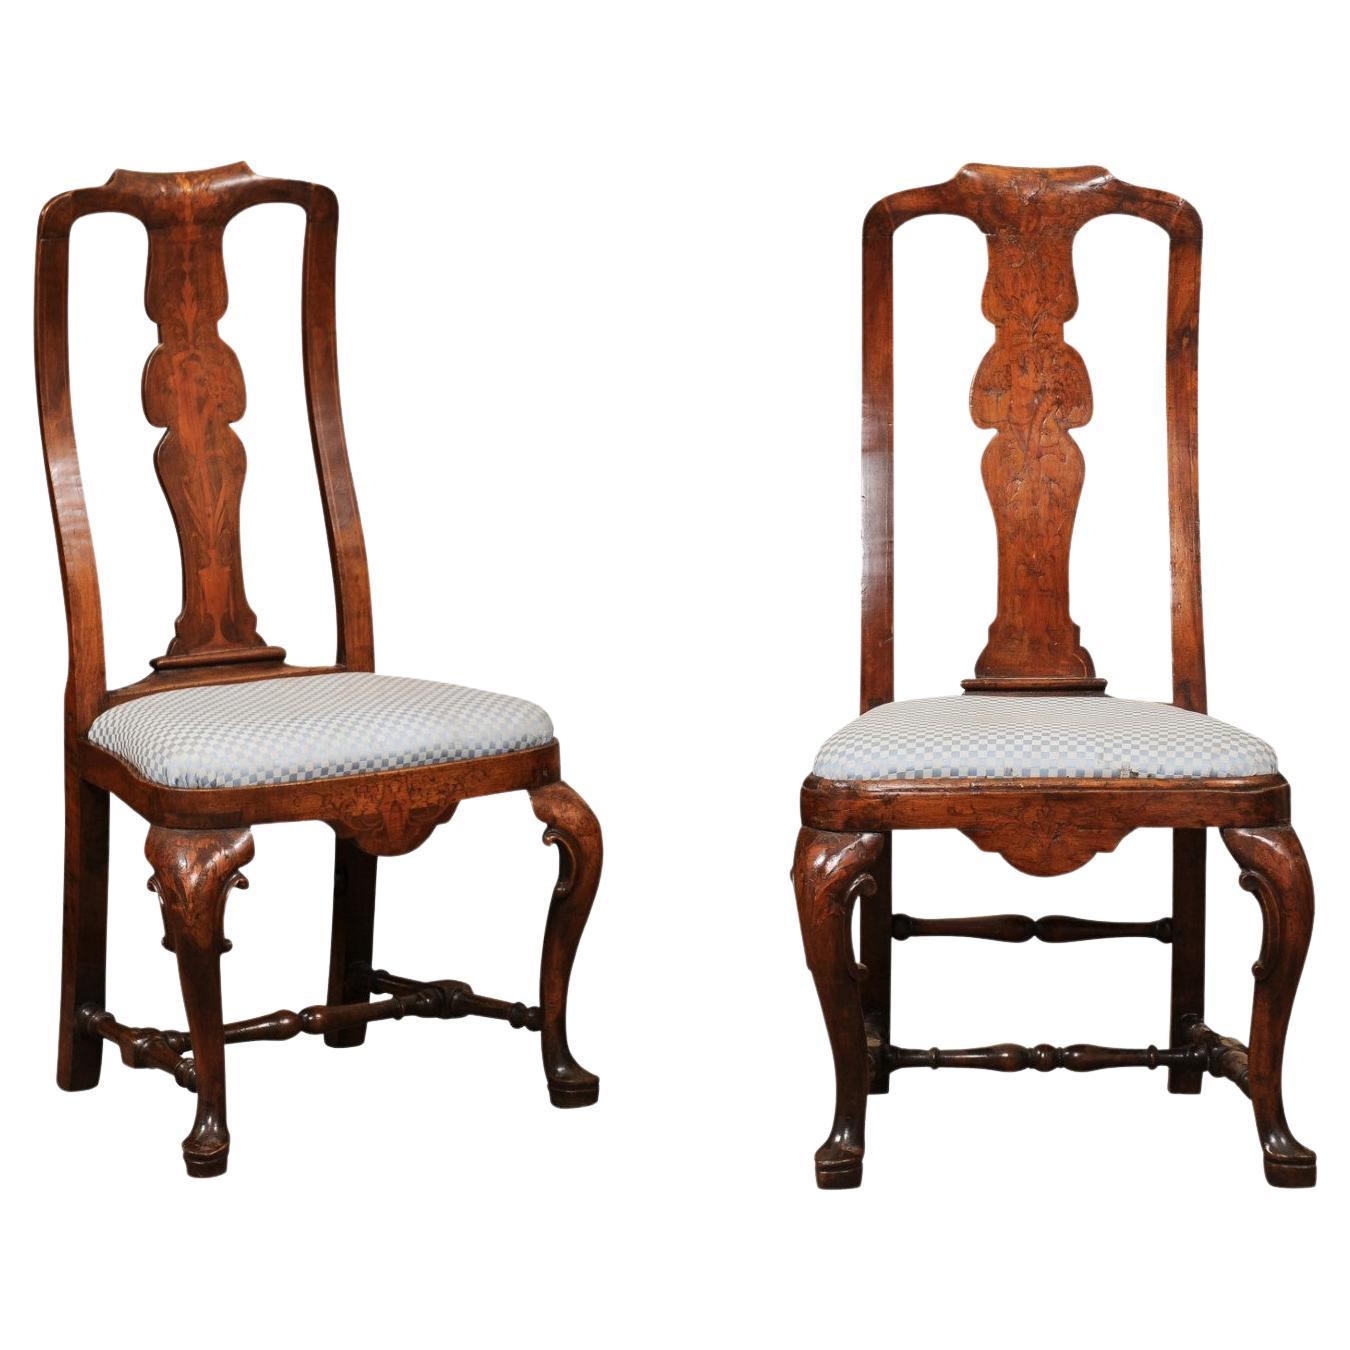 Paar niederländische Nussbaum-Beistellstühle aus dem 18. Jahrhundert mit Intarsien und Pad-Füßen